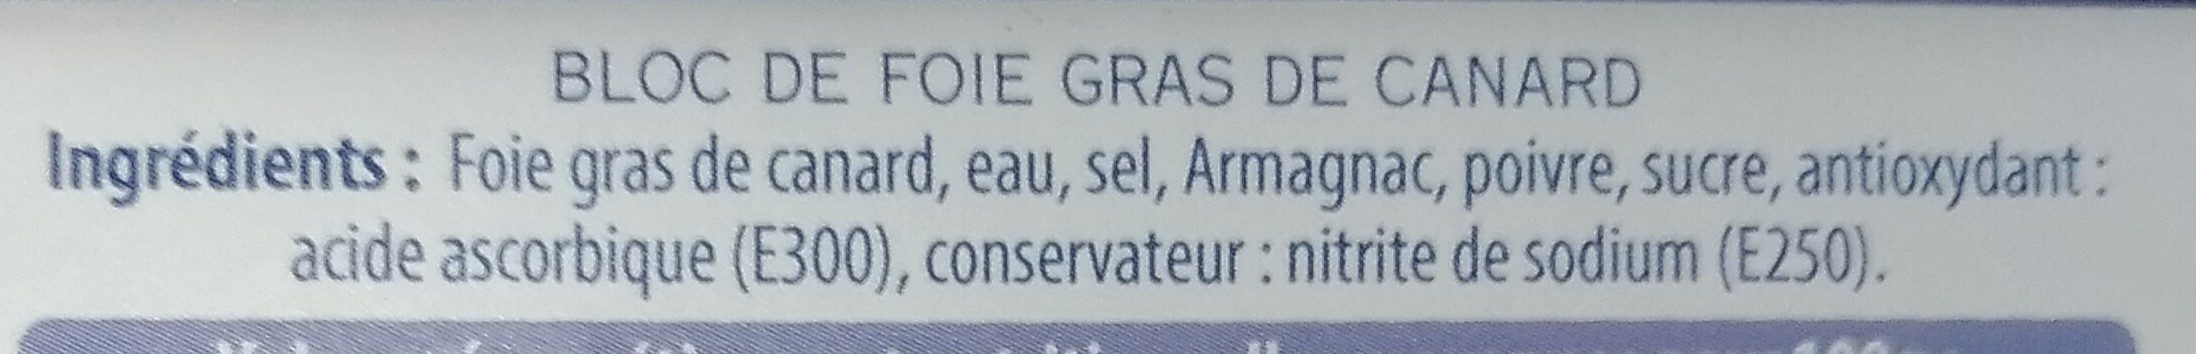 Bloc de foie gras de canard - Ingrédients